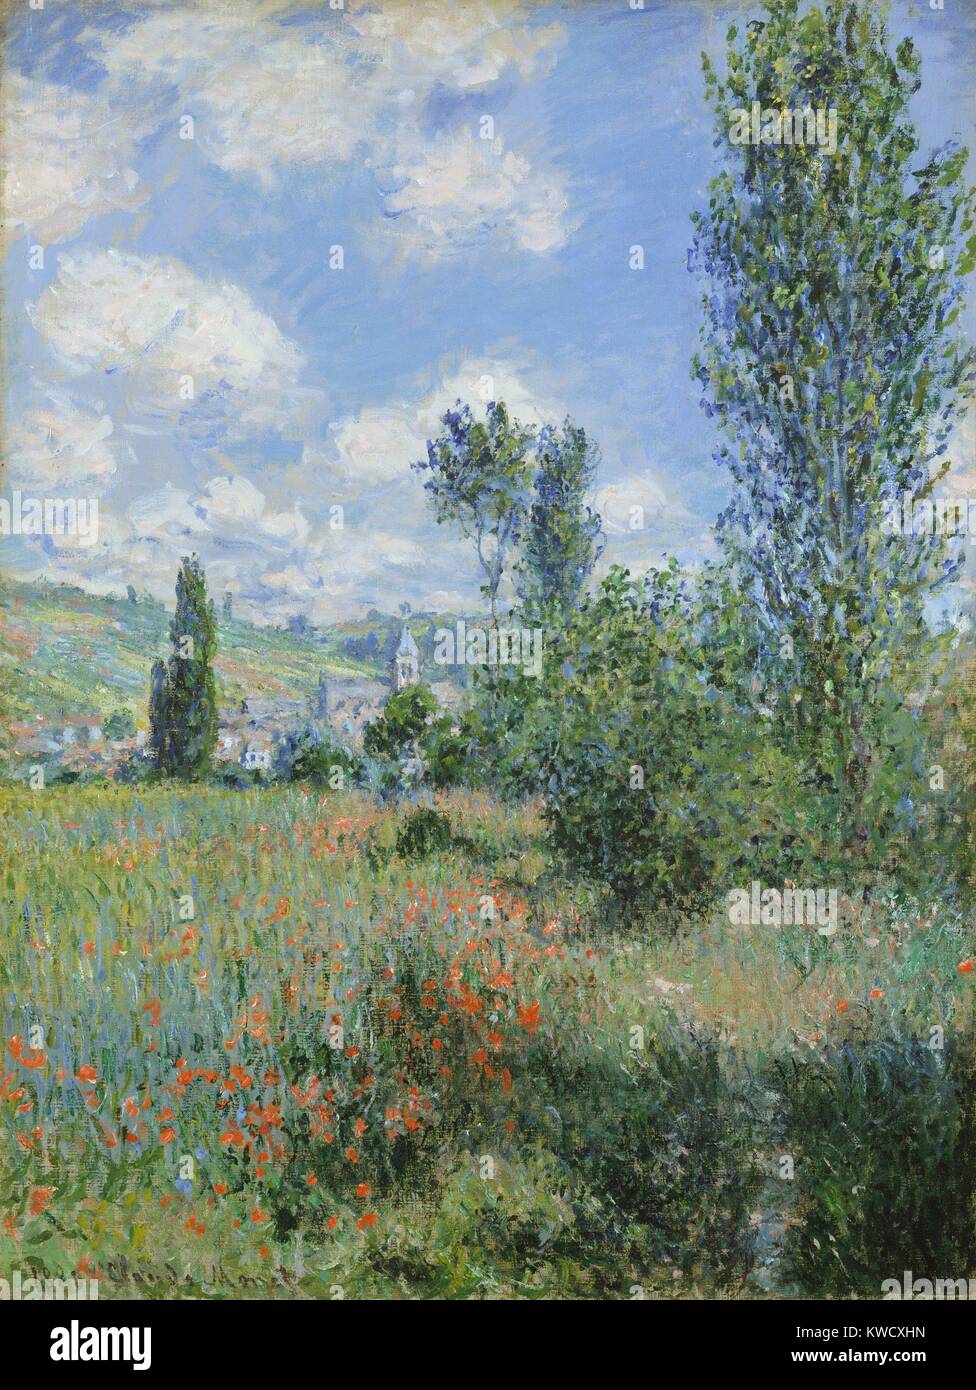 Blick auf Vetheuil, von Claude Monet, 1880, französischer impressionistischer Malerei, Öl auf Leinwand. Ein Wanderweg beginnt am unteren rechten und verschwindet im Mohnfeld. In der Ferne ist die Kirche Turm bei Vetheuil, einem Dorf nordwestlich von Paris (BSLOC 2017 3 32) Stockfoto